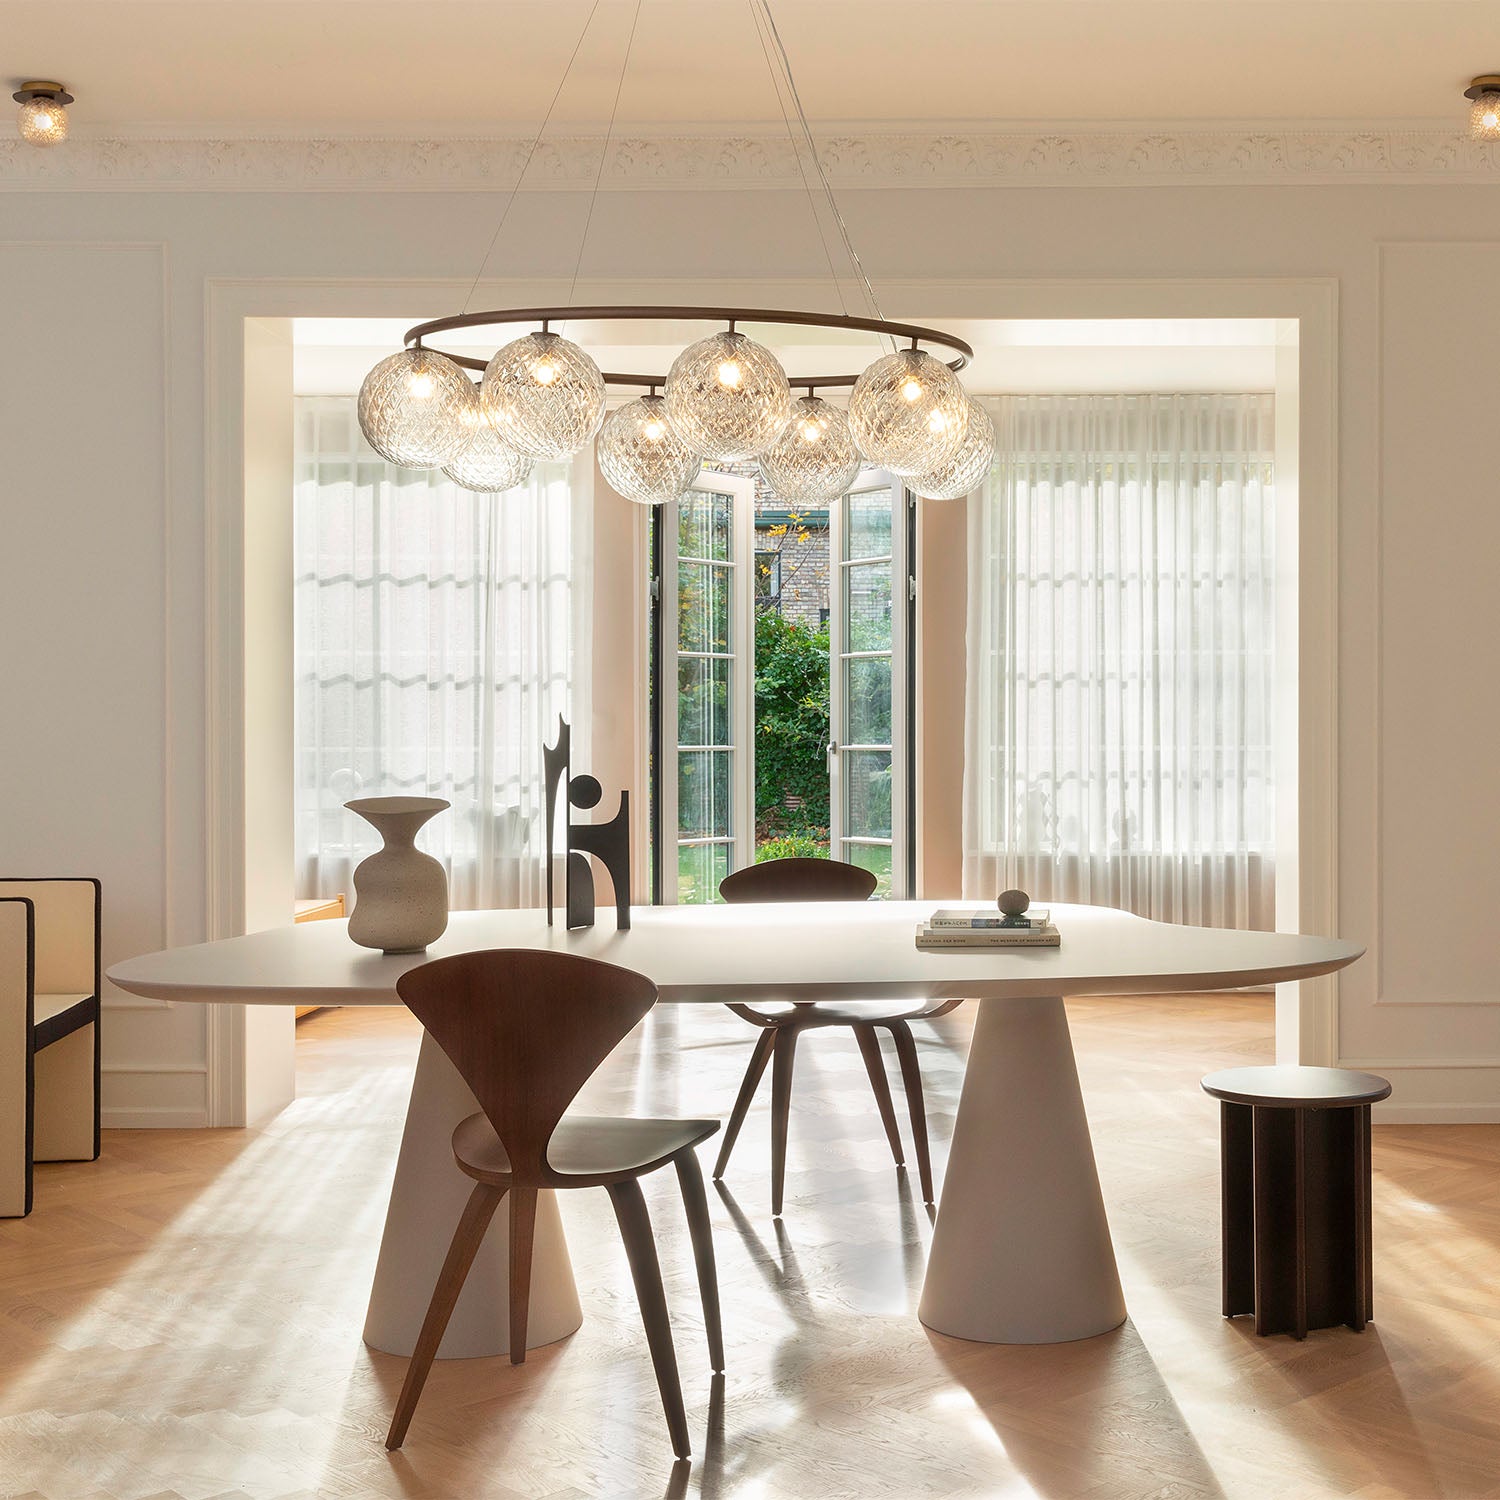 MIIRA Optic Oval – Hochwertige, elegante ovale Pendelleuchte für das Wohnzimmer